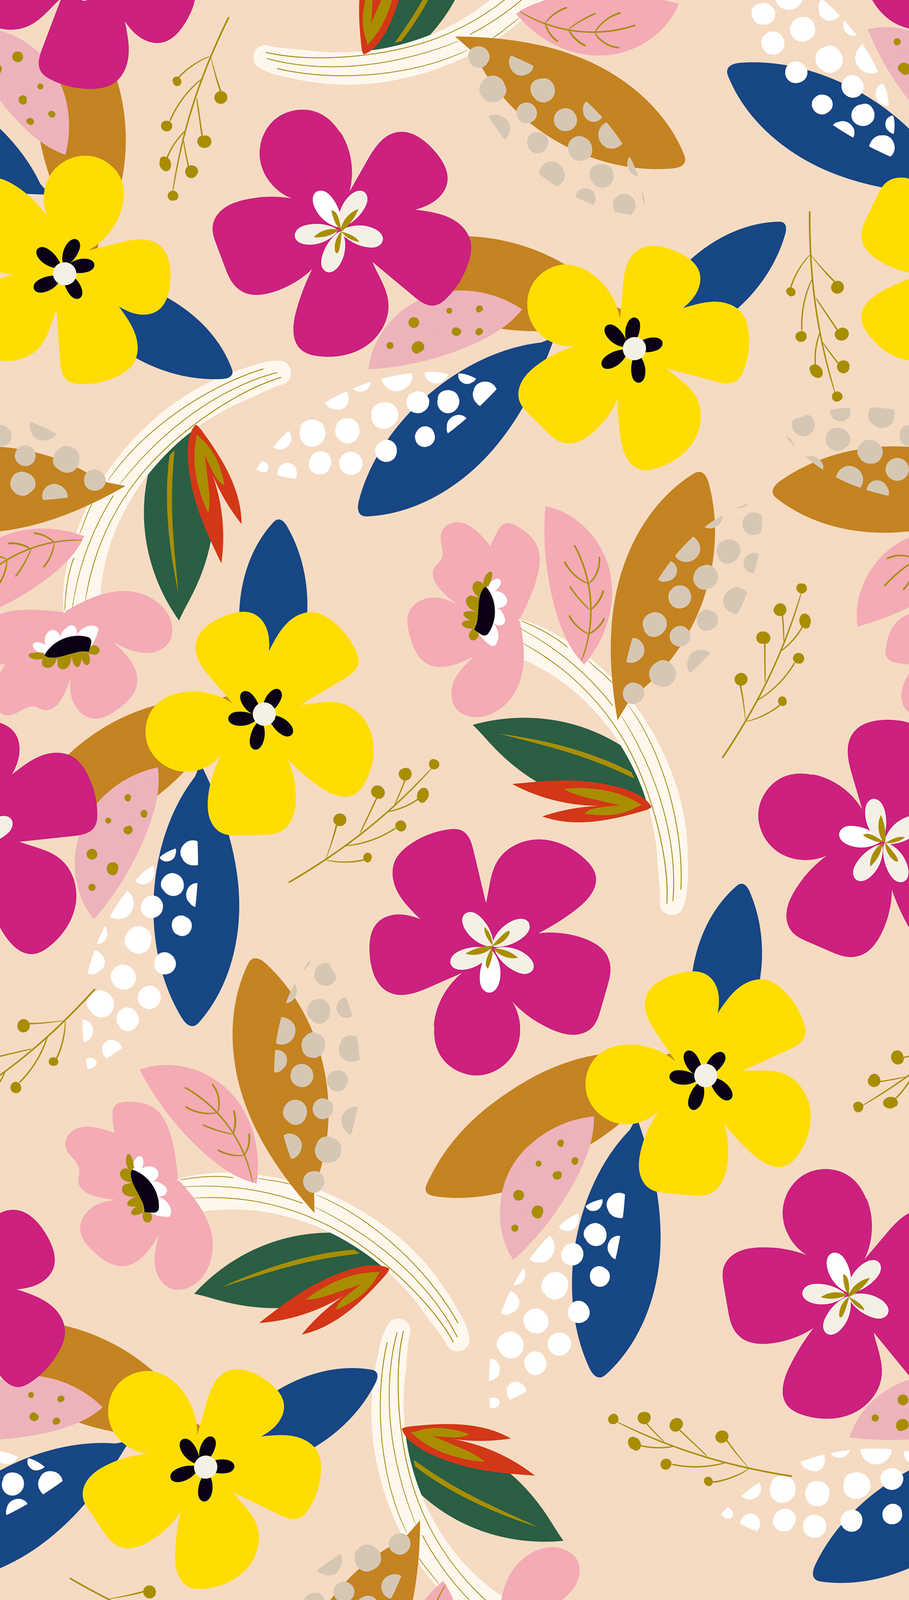             Tapete mit buntem Blumenmuster in kräftigen Farben – Bunt, Beige, Gelb
        